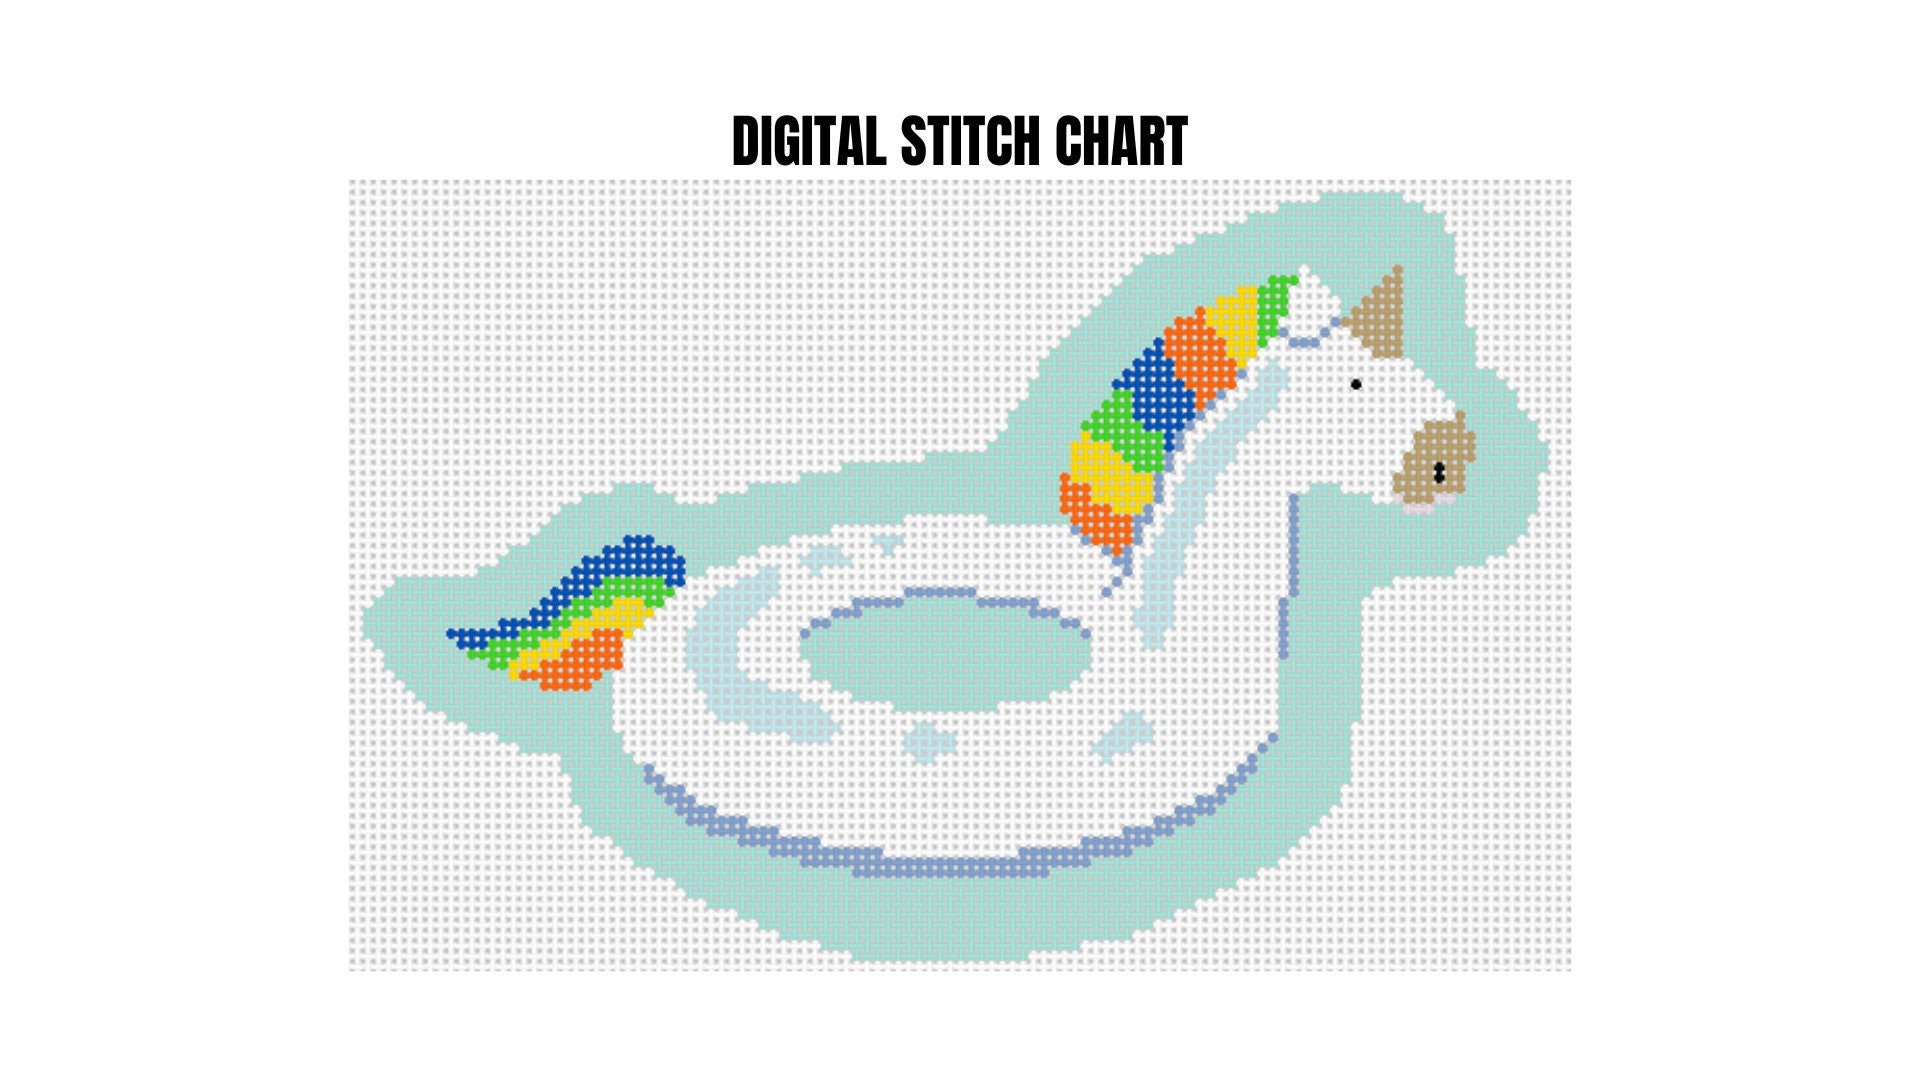 Unicorn Tapestry - Modern Cross Stitch Pattern by Tiny Modernist